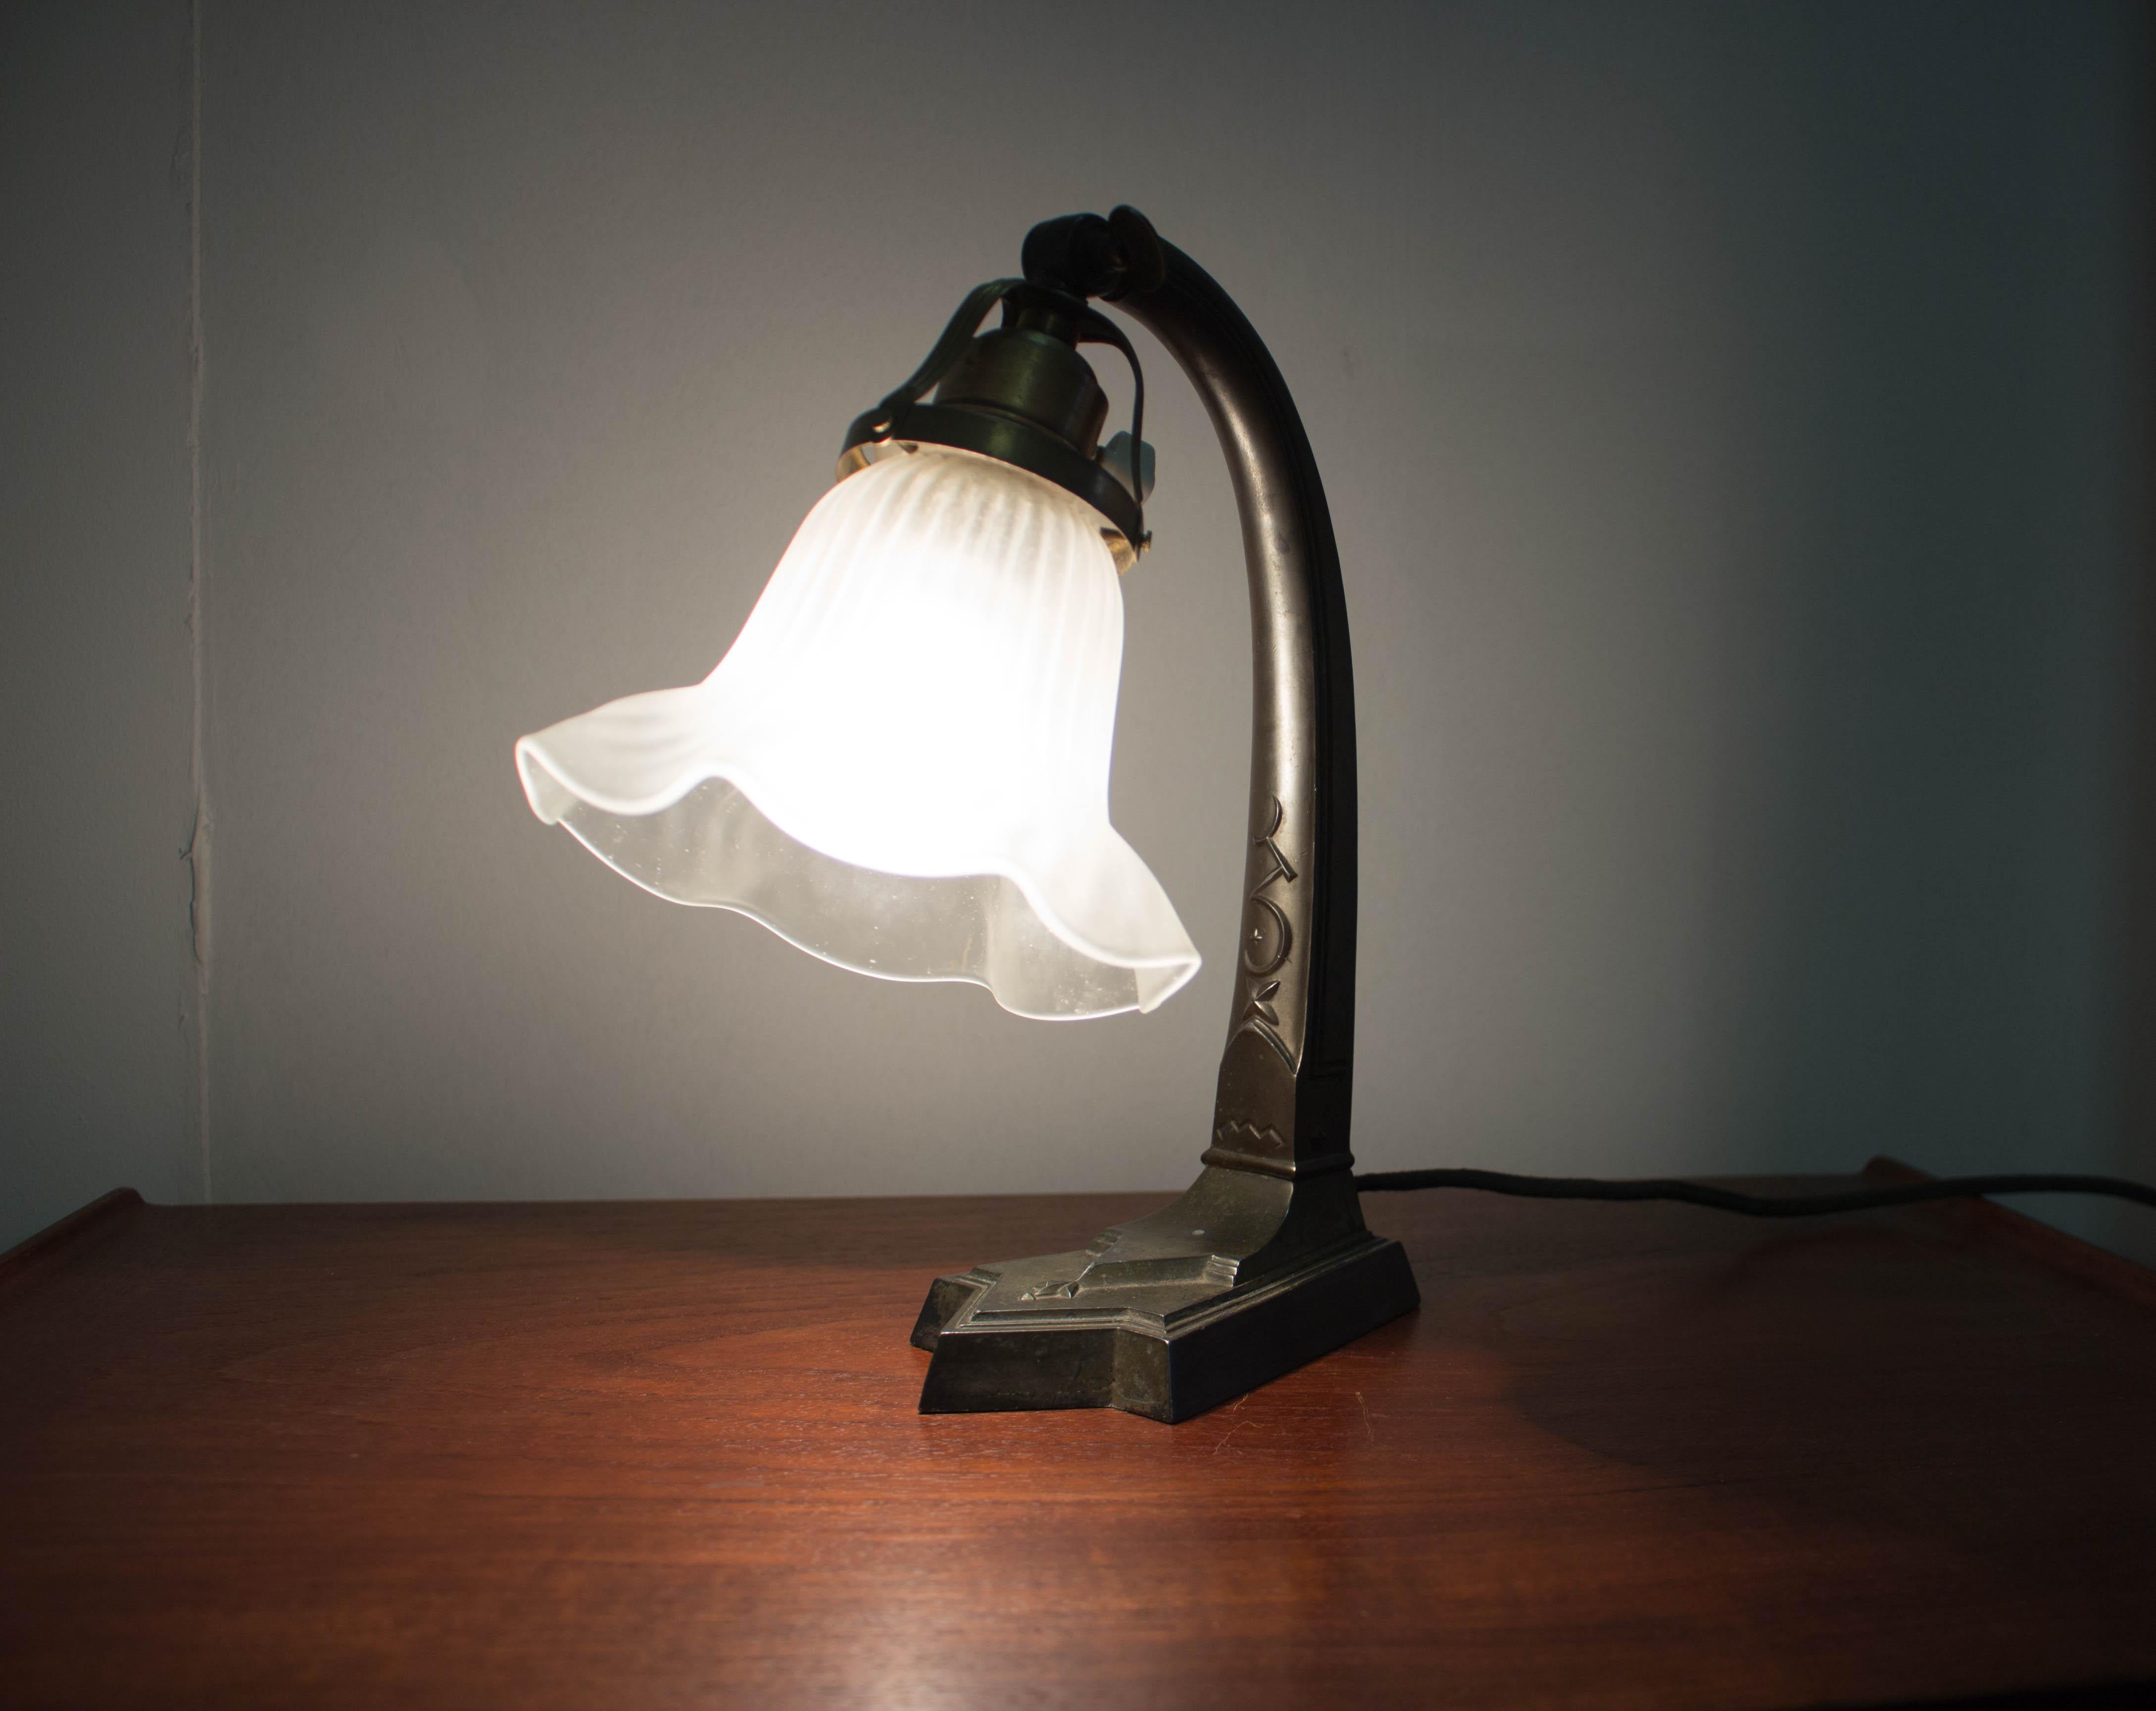 Art Nouveau table lamp in perfect original condition.
E27 or E26 bulb.